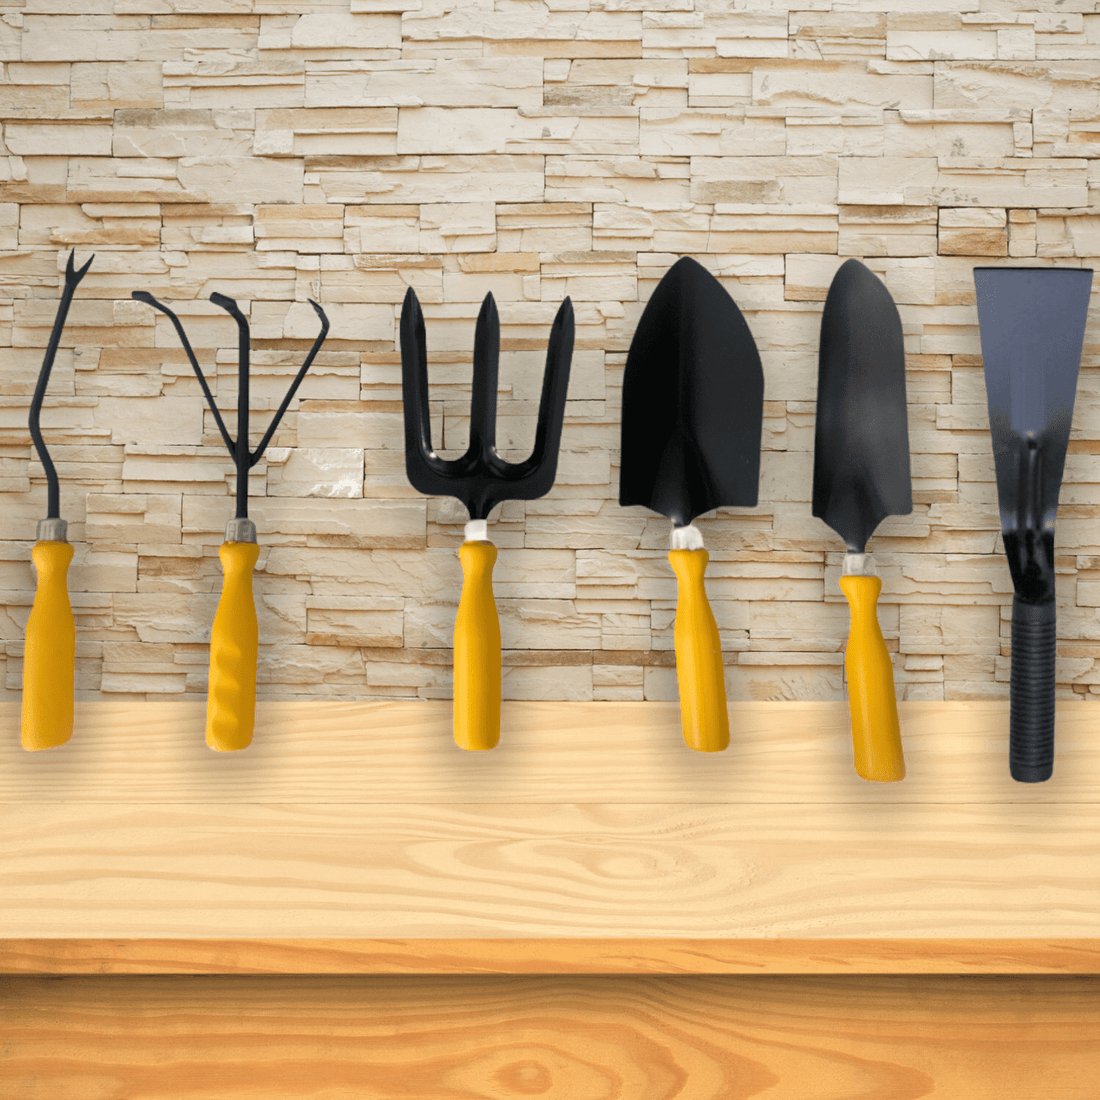 Gardening Tools - Set of 6